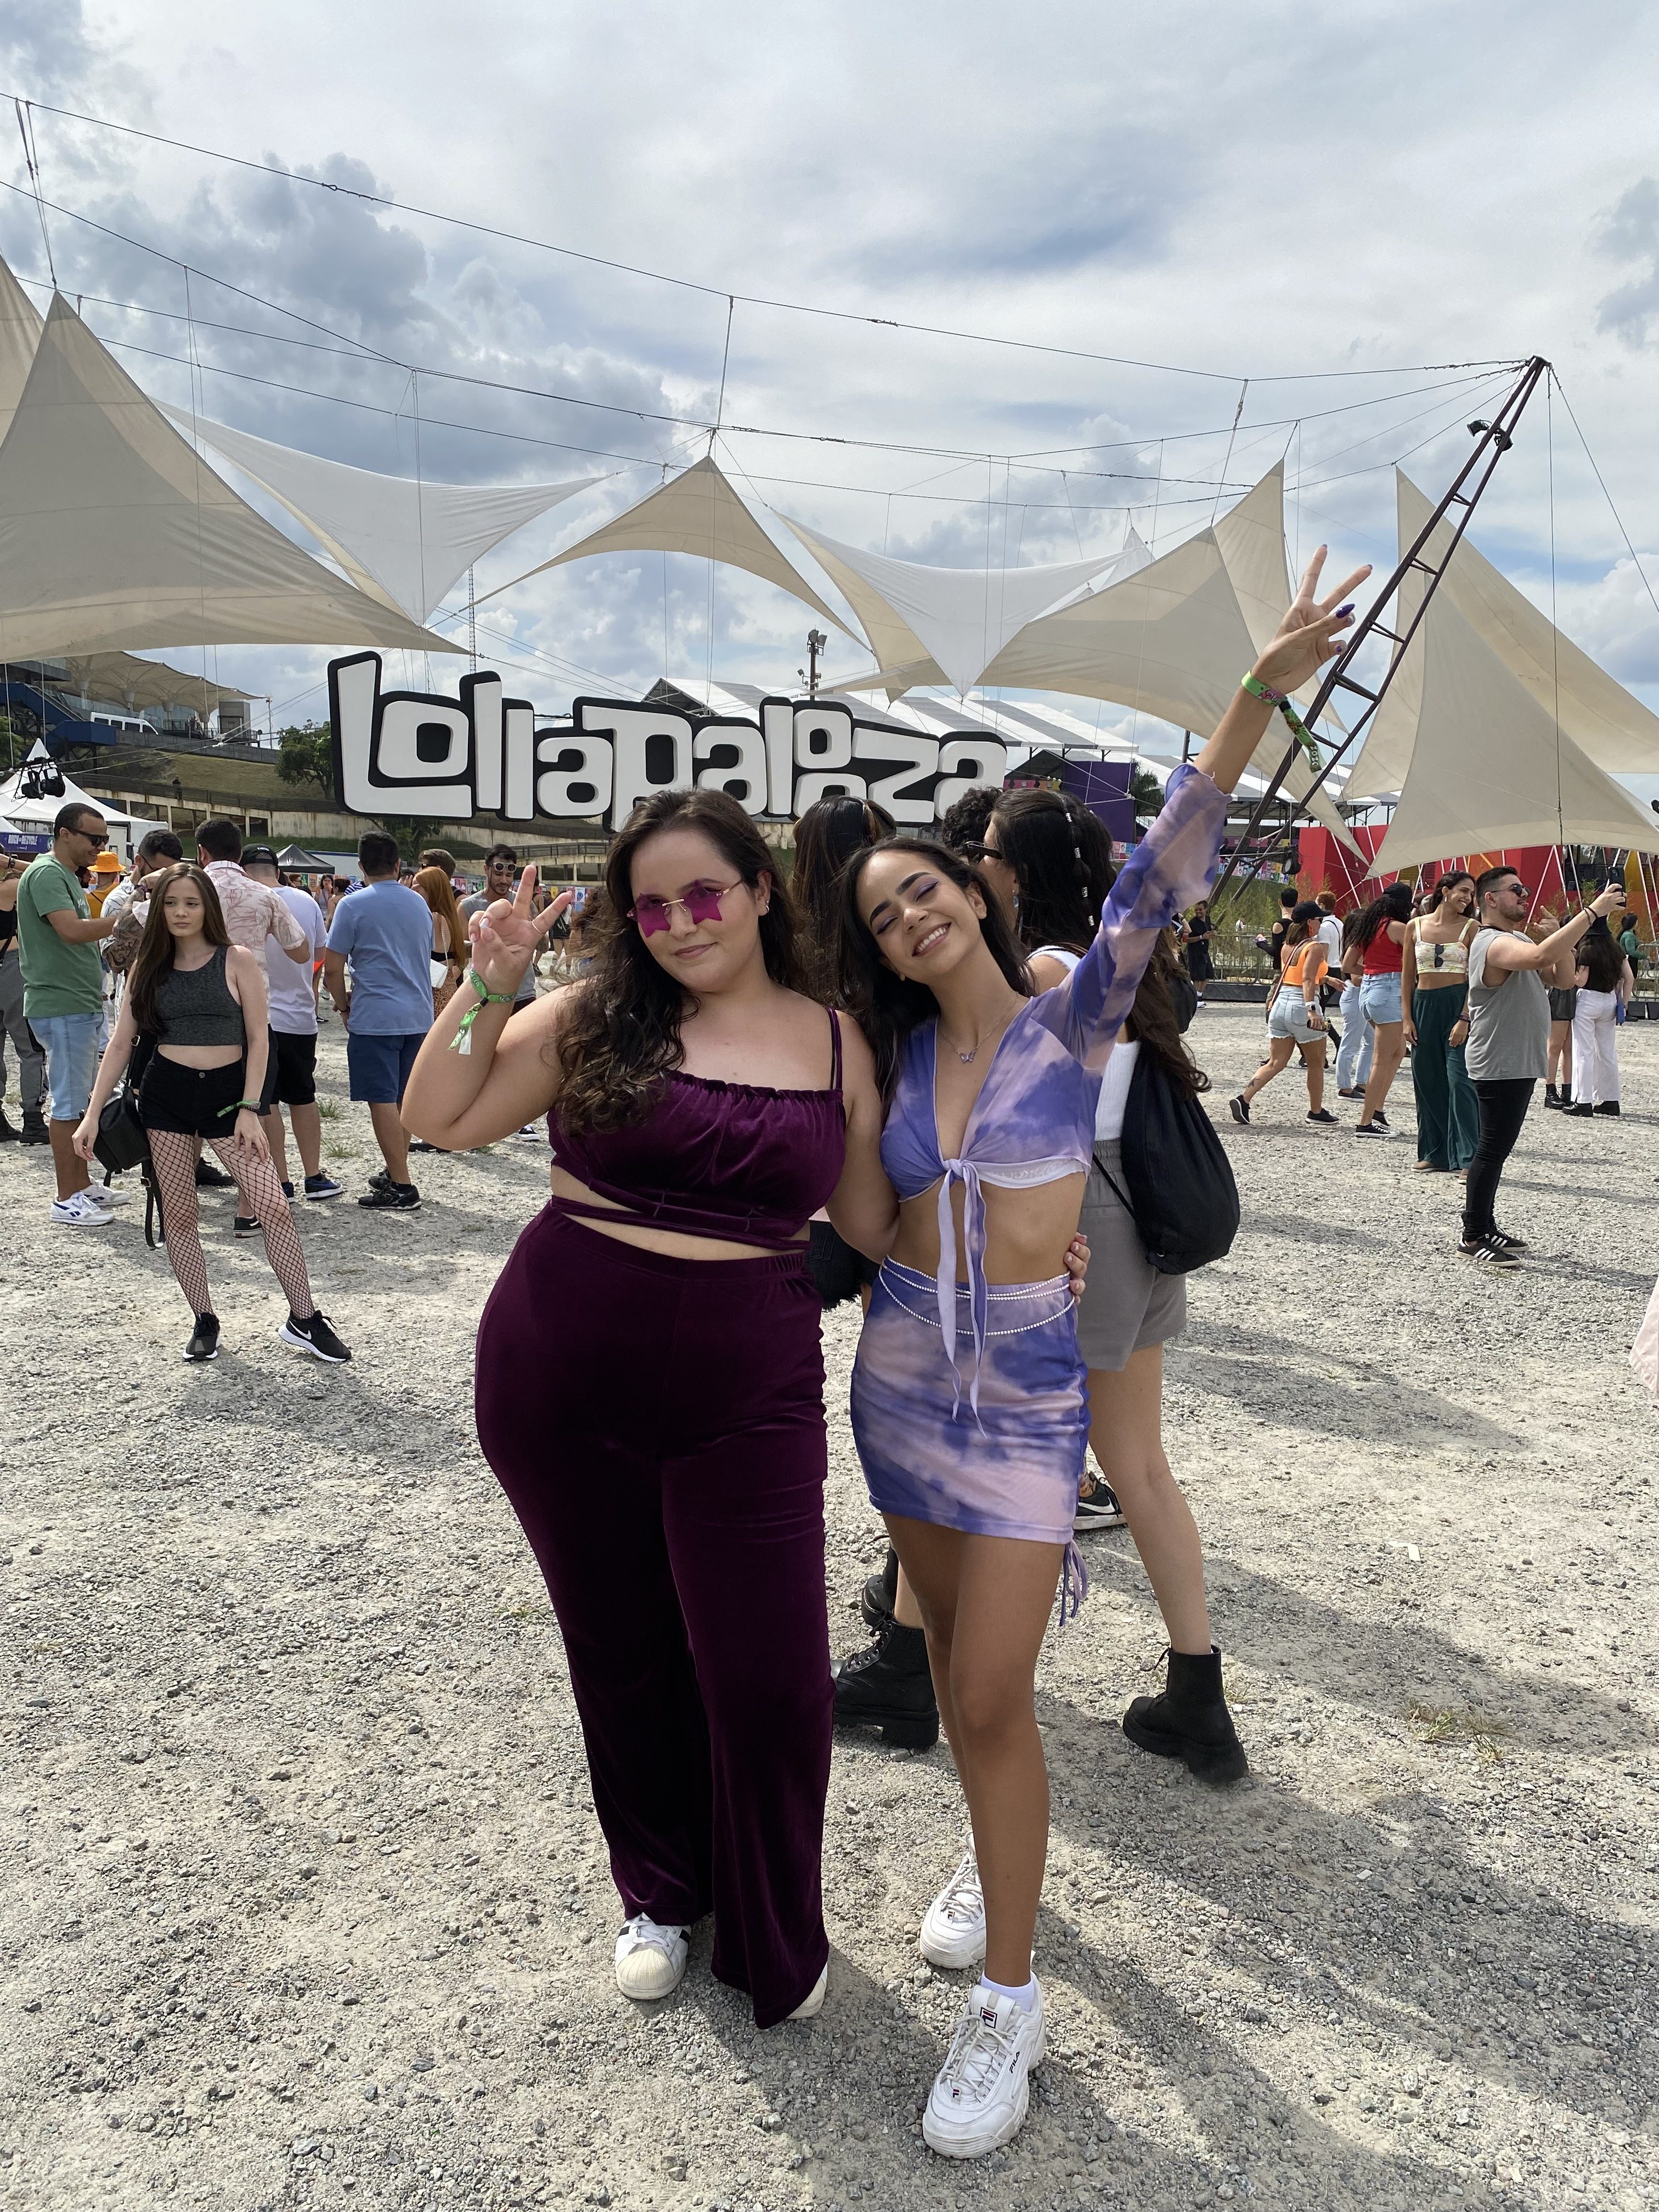 Duas garotas em frente ao letreiro do Lollapalooza usando conjuntinho. À esquerda, menina de calça e top de veludo roxo. À direita, menina de top e saia tie-dye roxo.